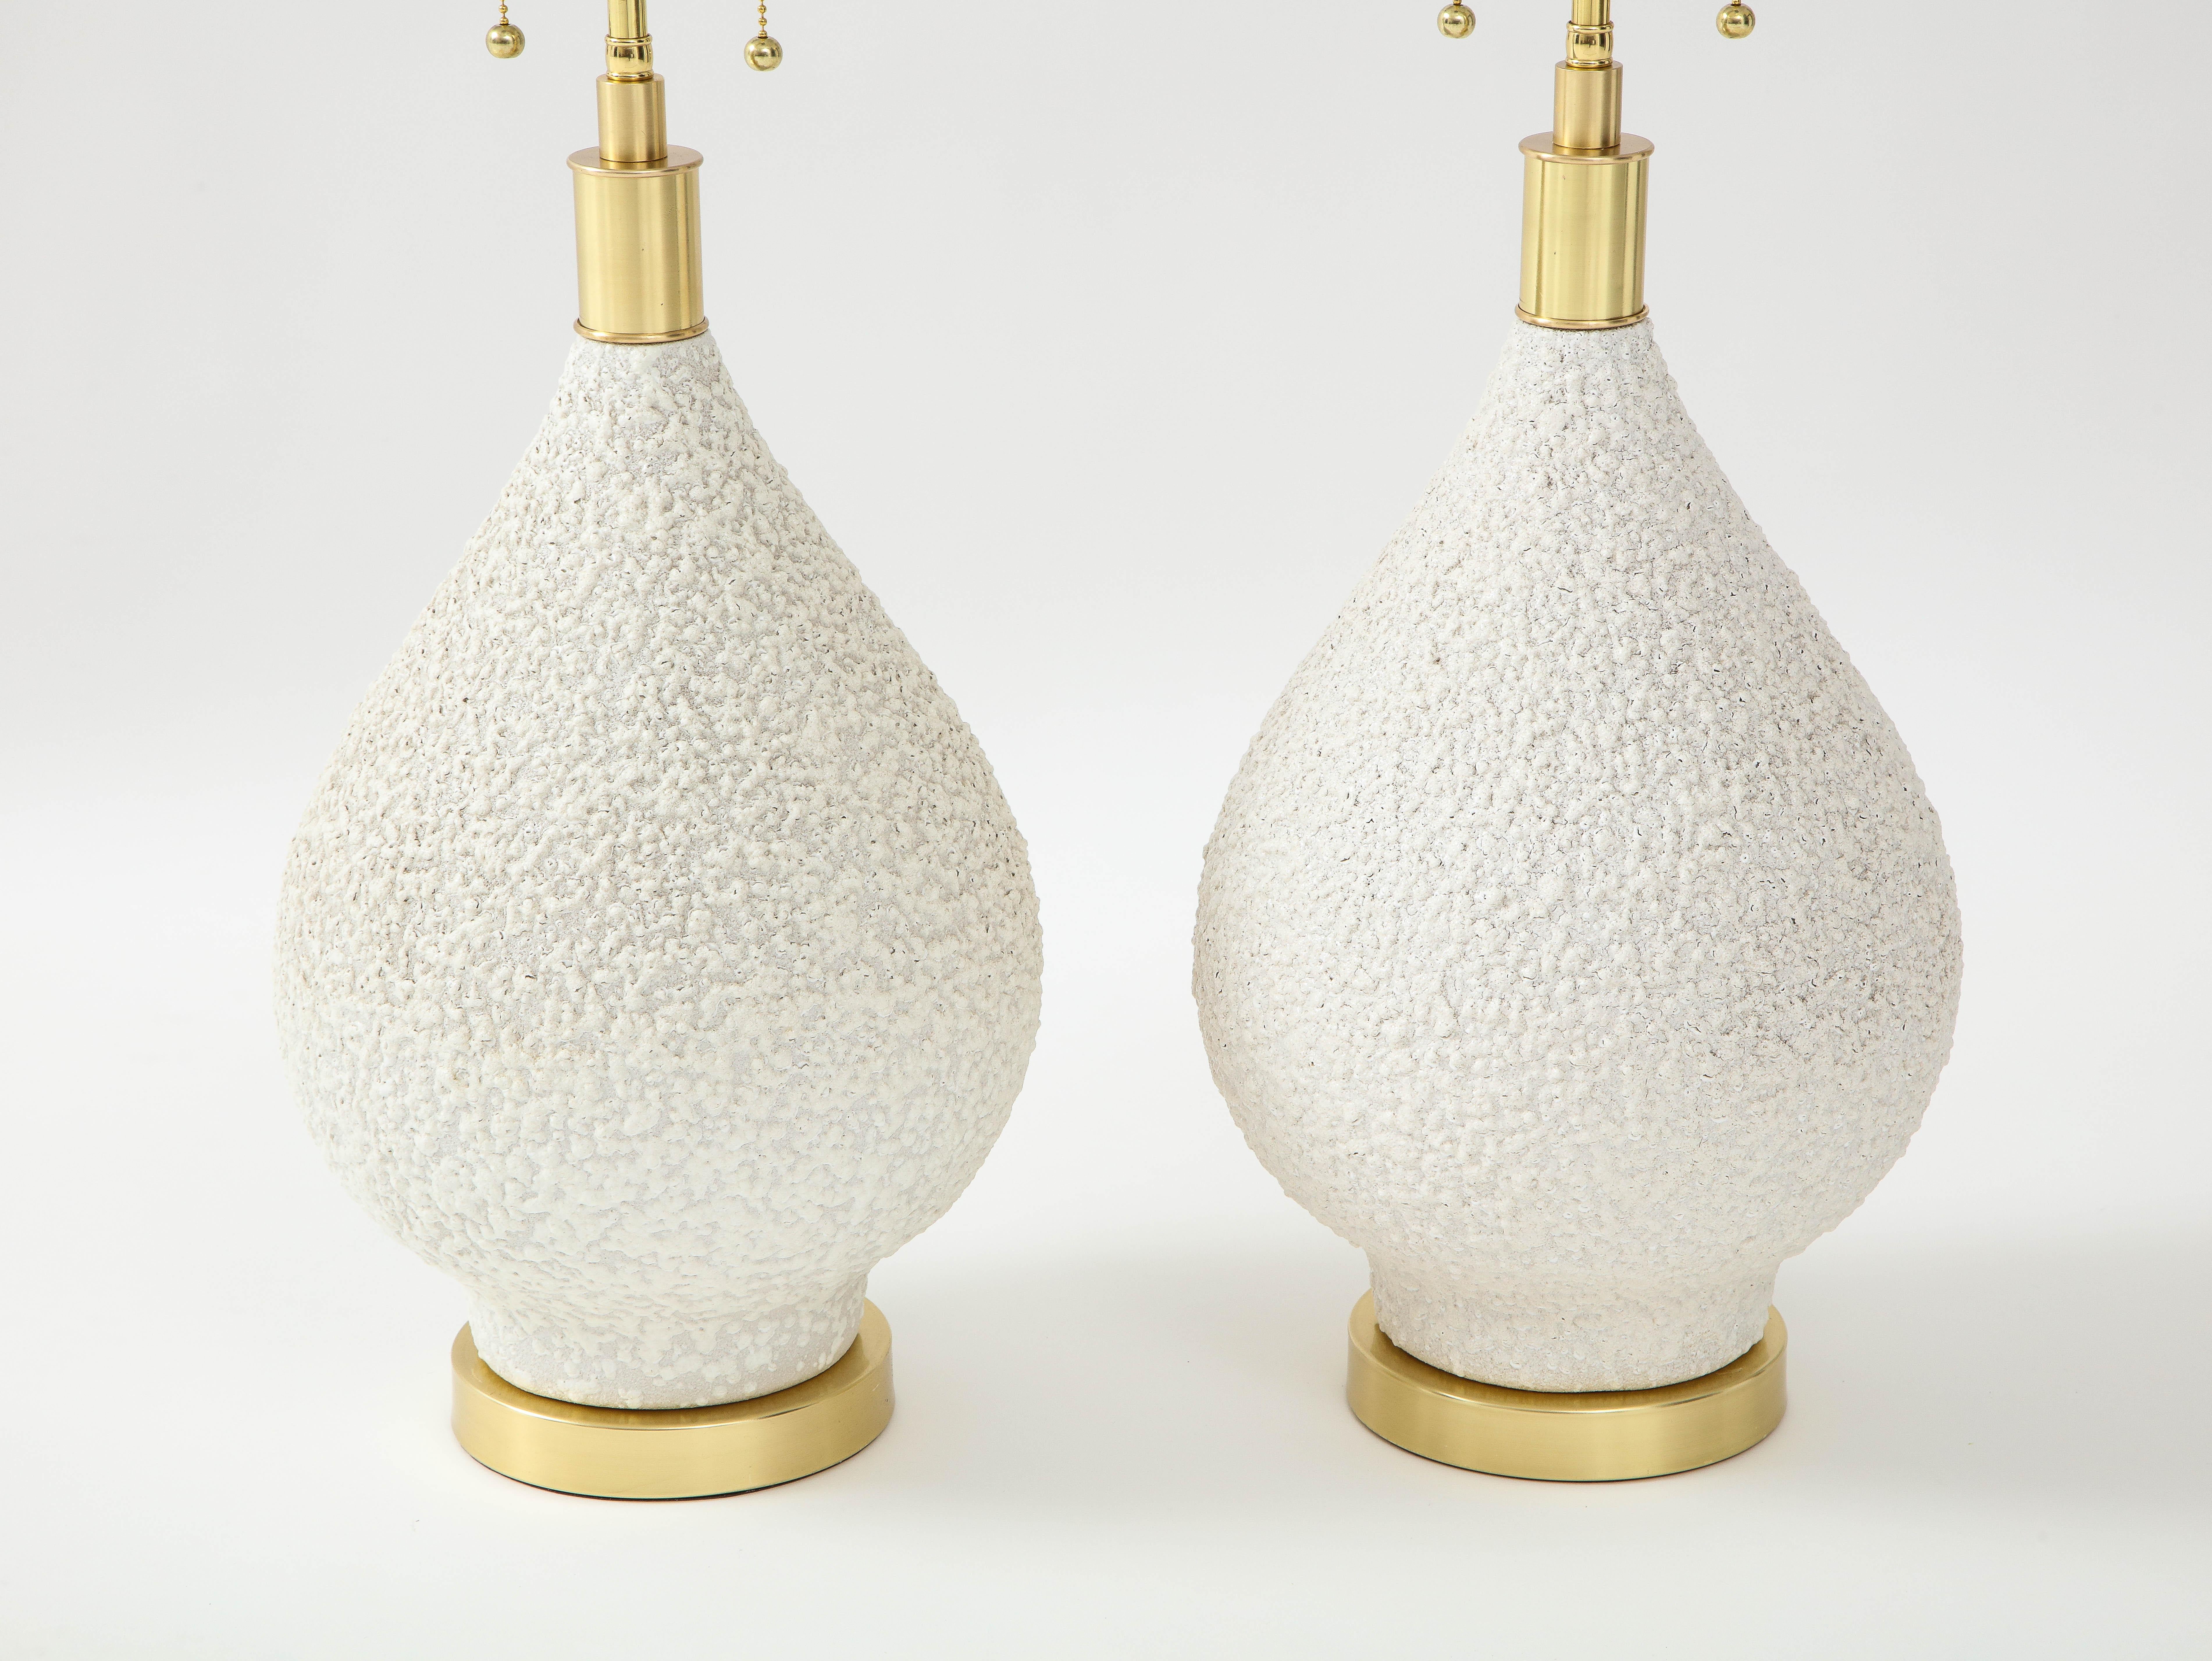 American Pair of Pear Shaped Ceramic Lamps